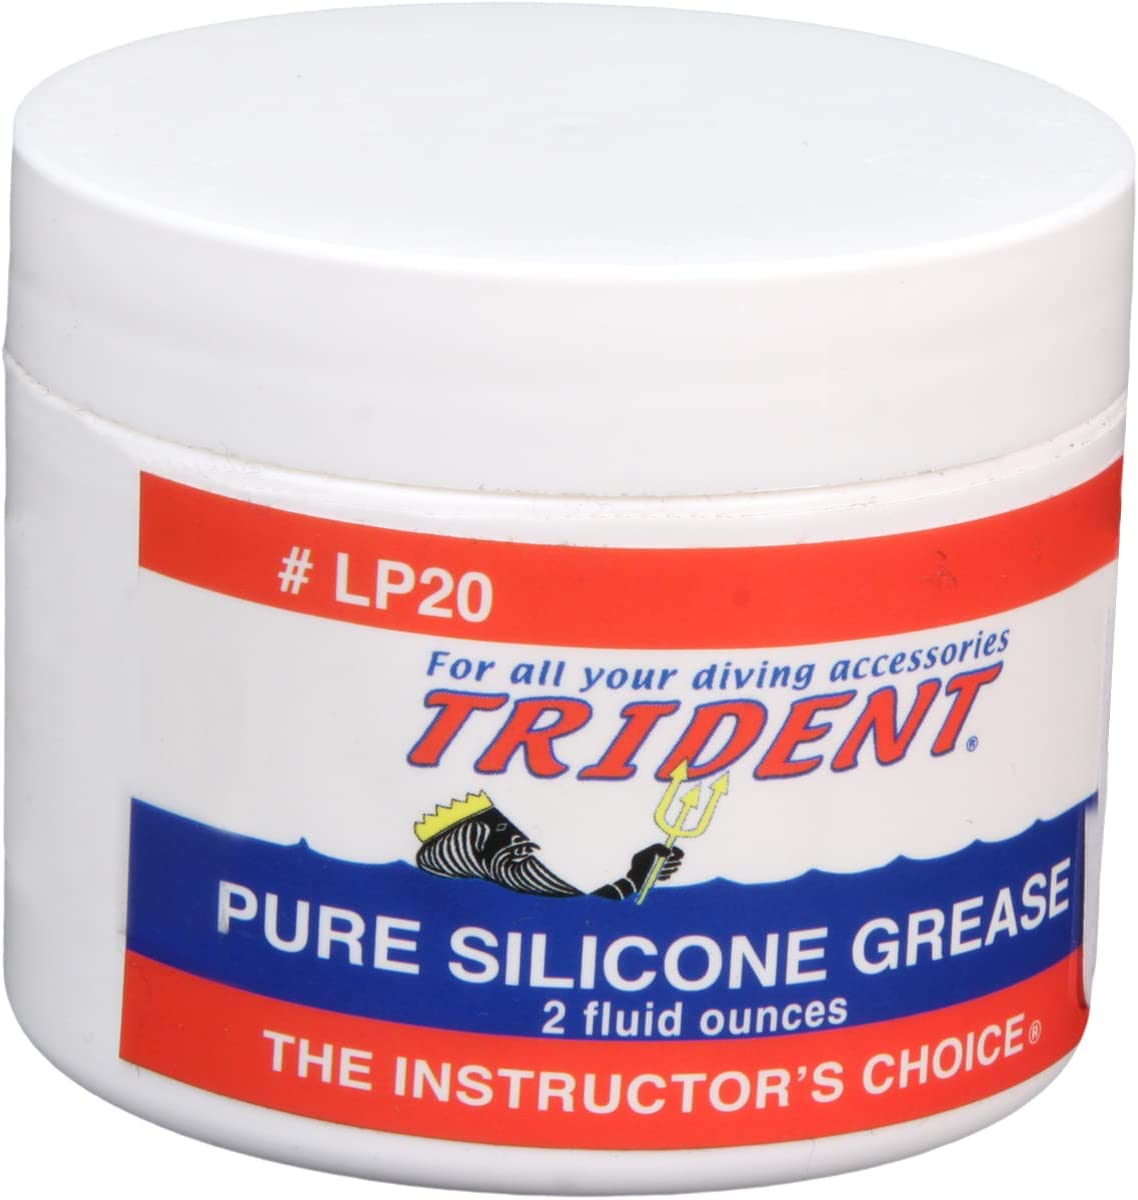 Trident Pure Silicone Grease 2 fl oz